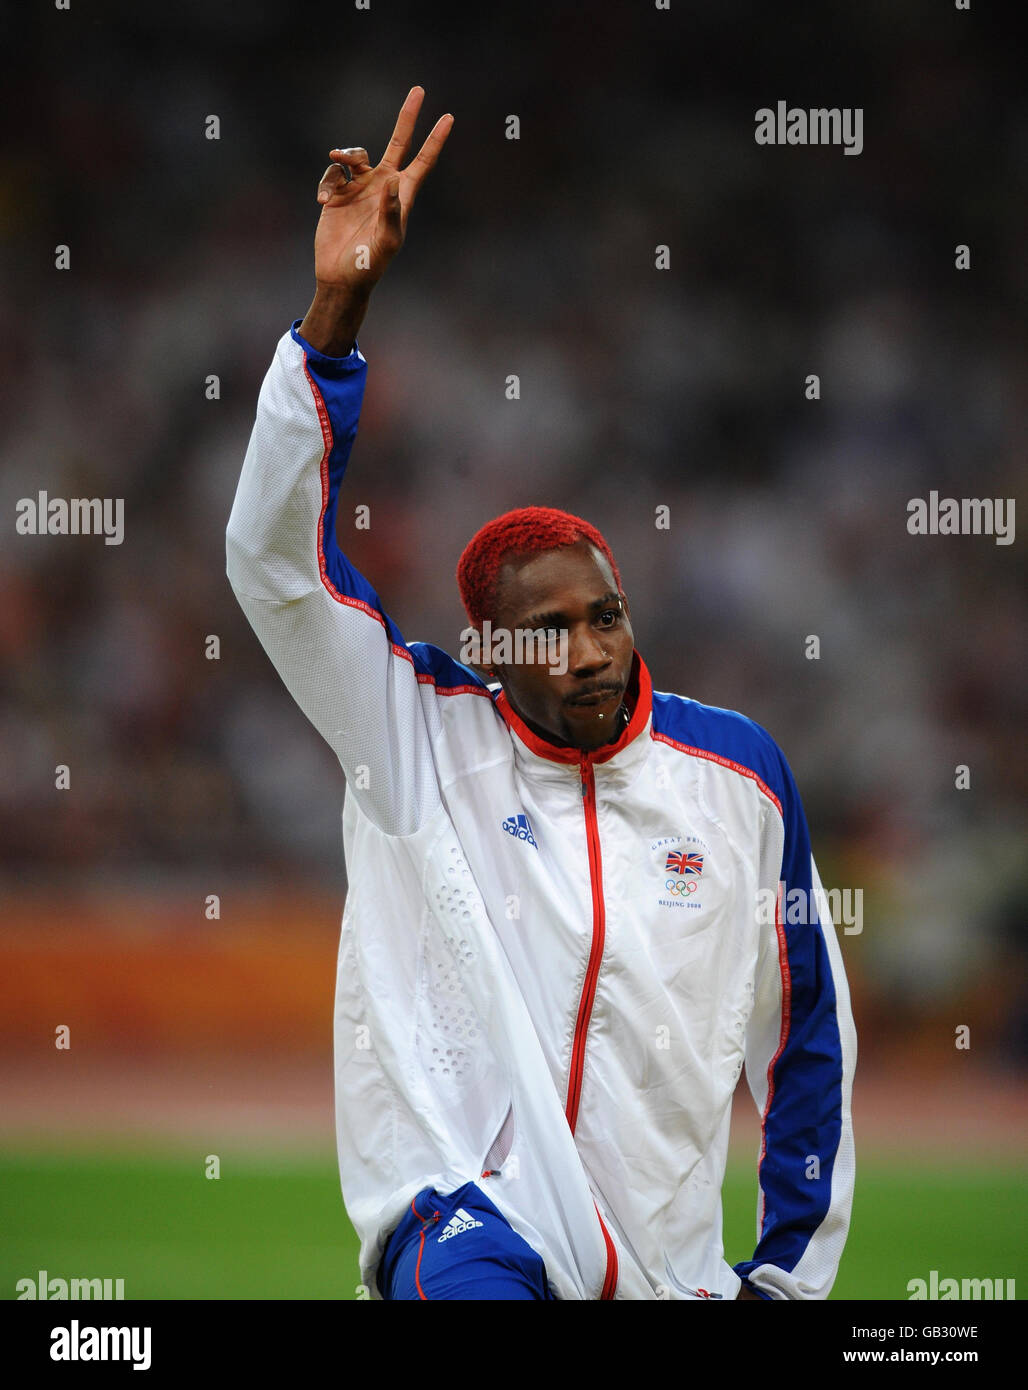 Der britische Phillips Idowu bei der Medaillenverleihung für den Dreisprung der Männer im Nationalstadion in Peking während der Olympischen Spiele 2008 in Peking in China. Stockfoto